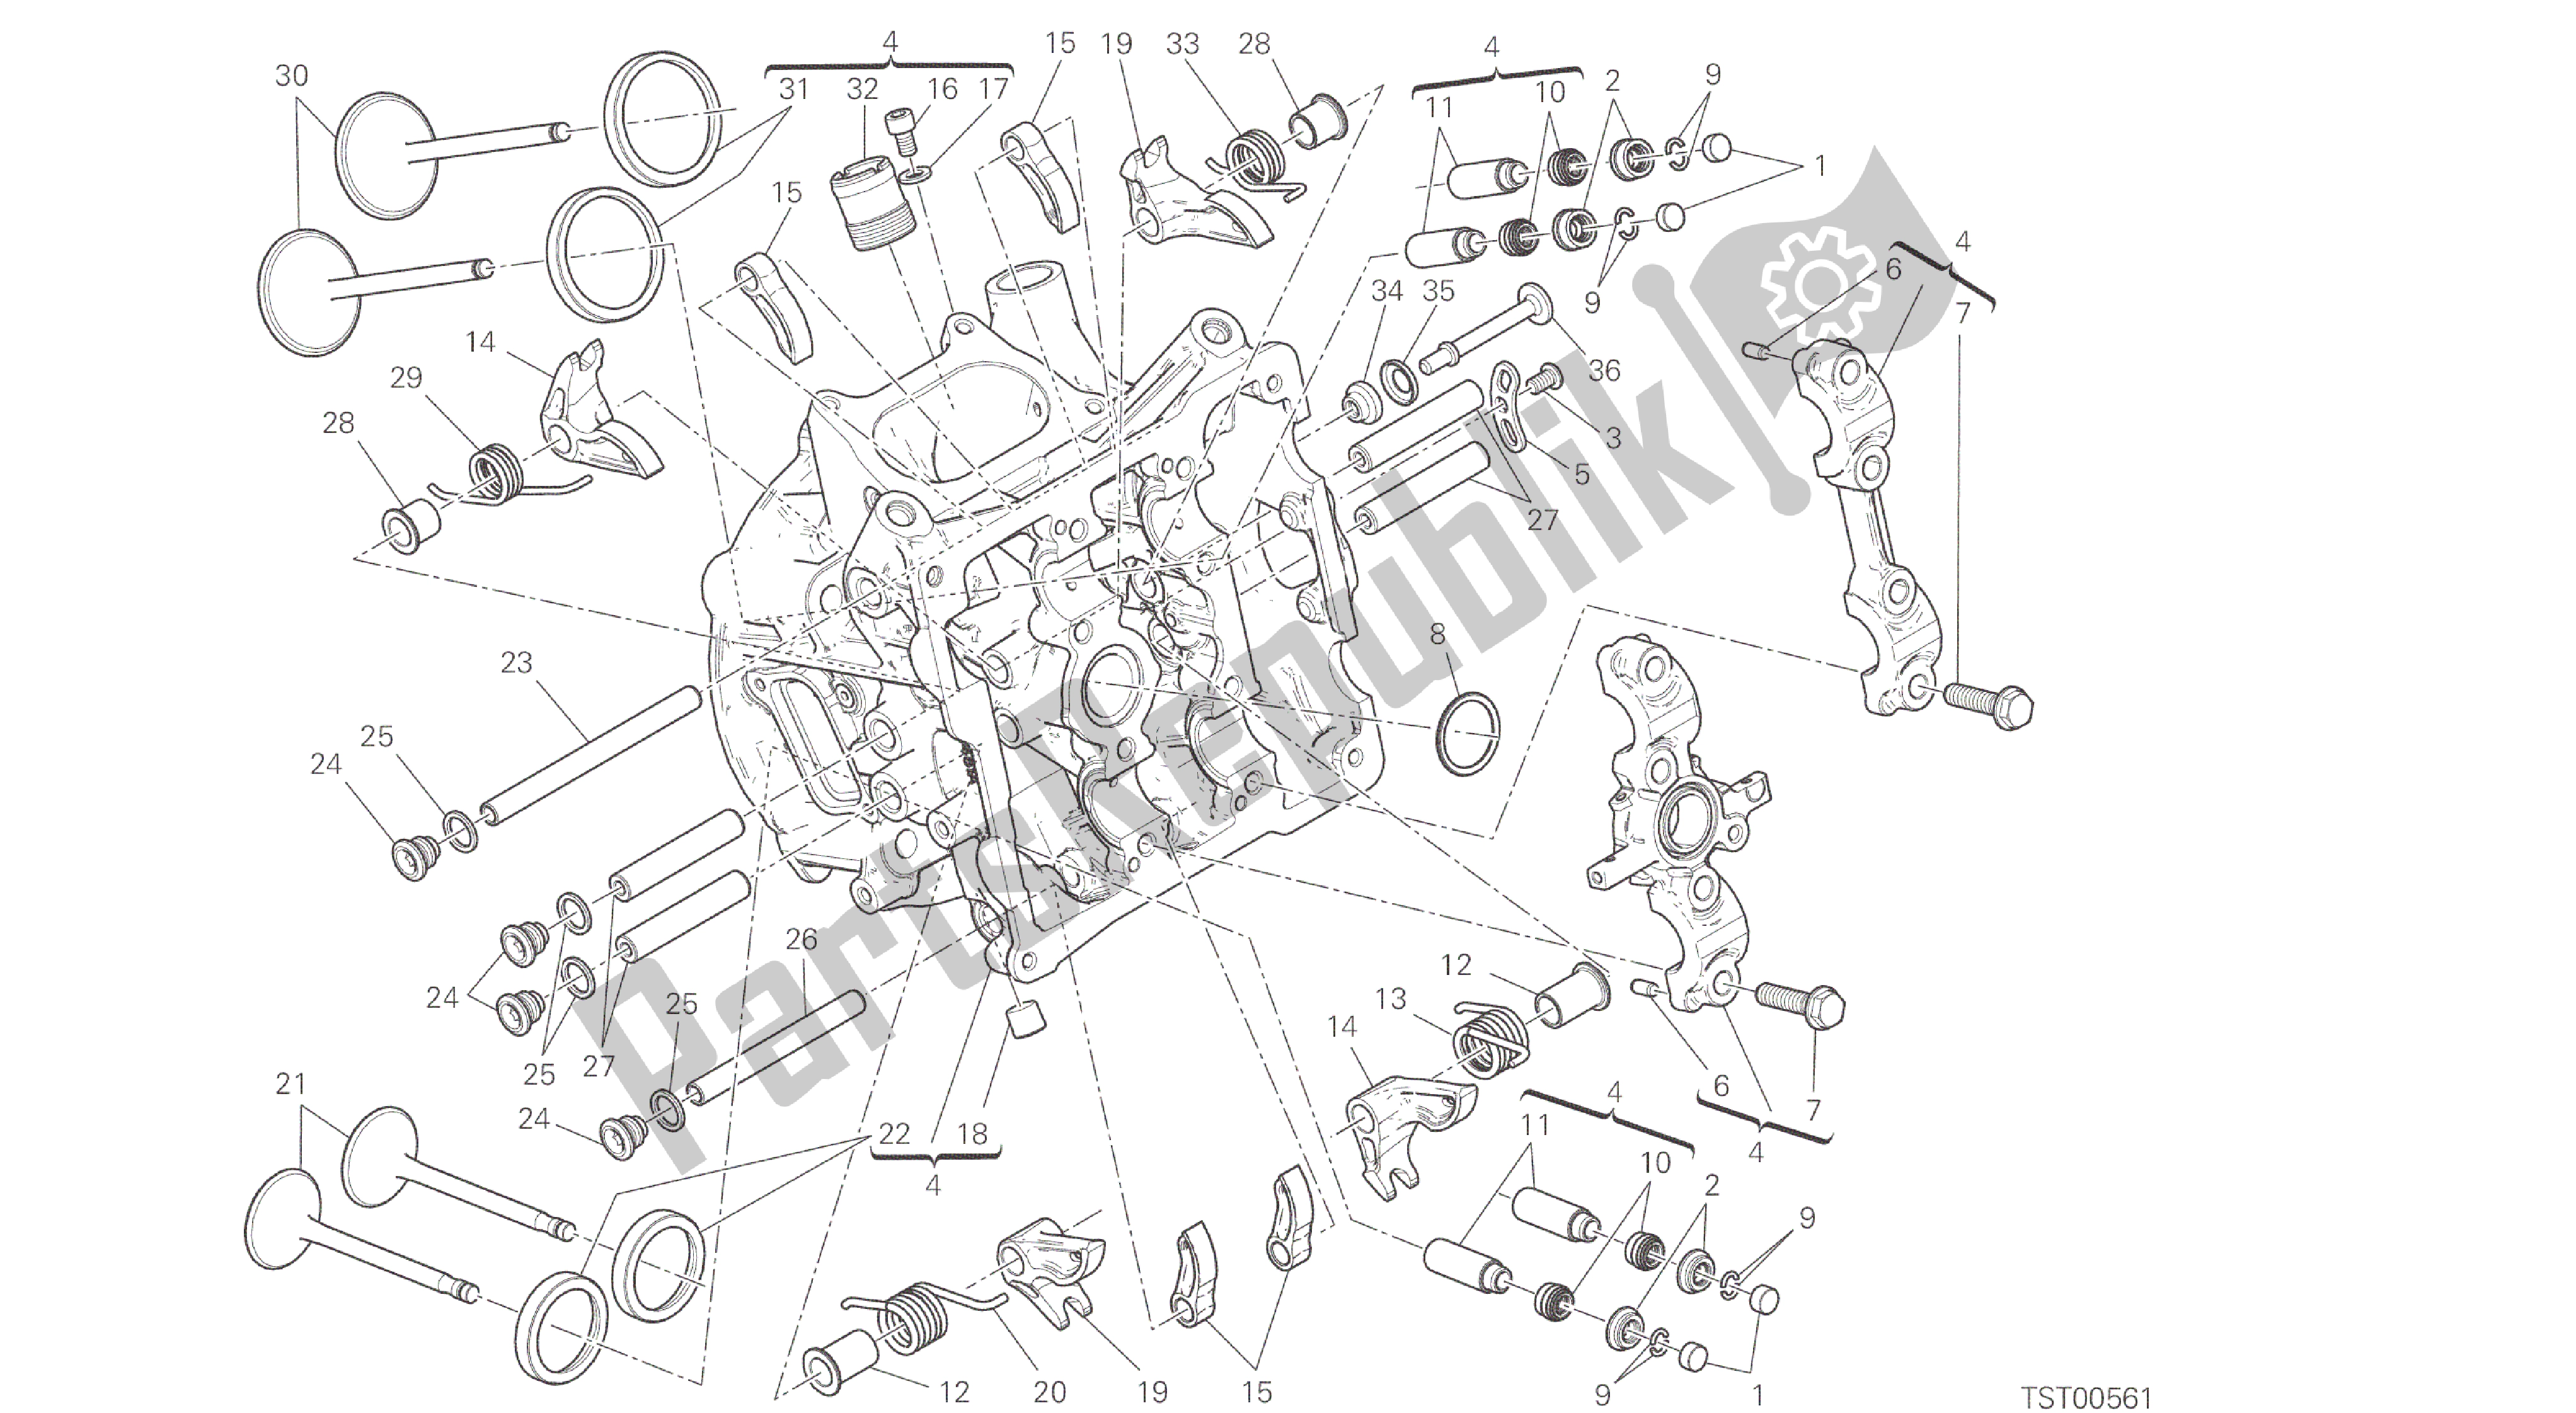 Todas as partes de Desenho 014 - Motor De Grupo Cabeça Horizontal [mod: 959. 959 Aws] do Ducati Panigale 959 2016